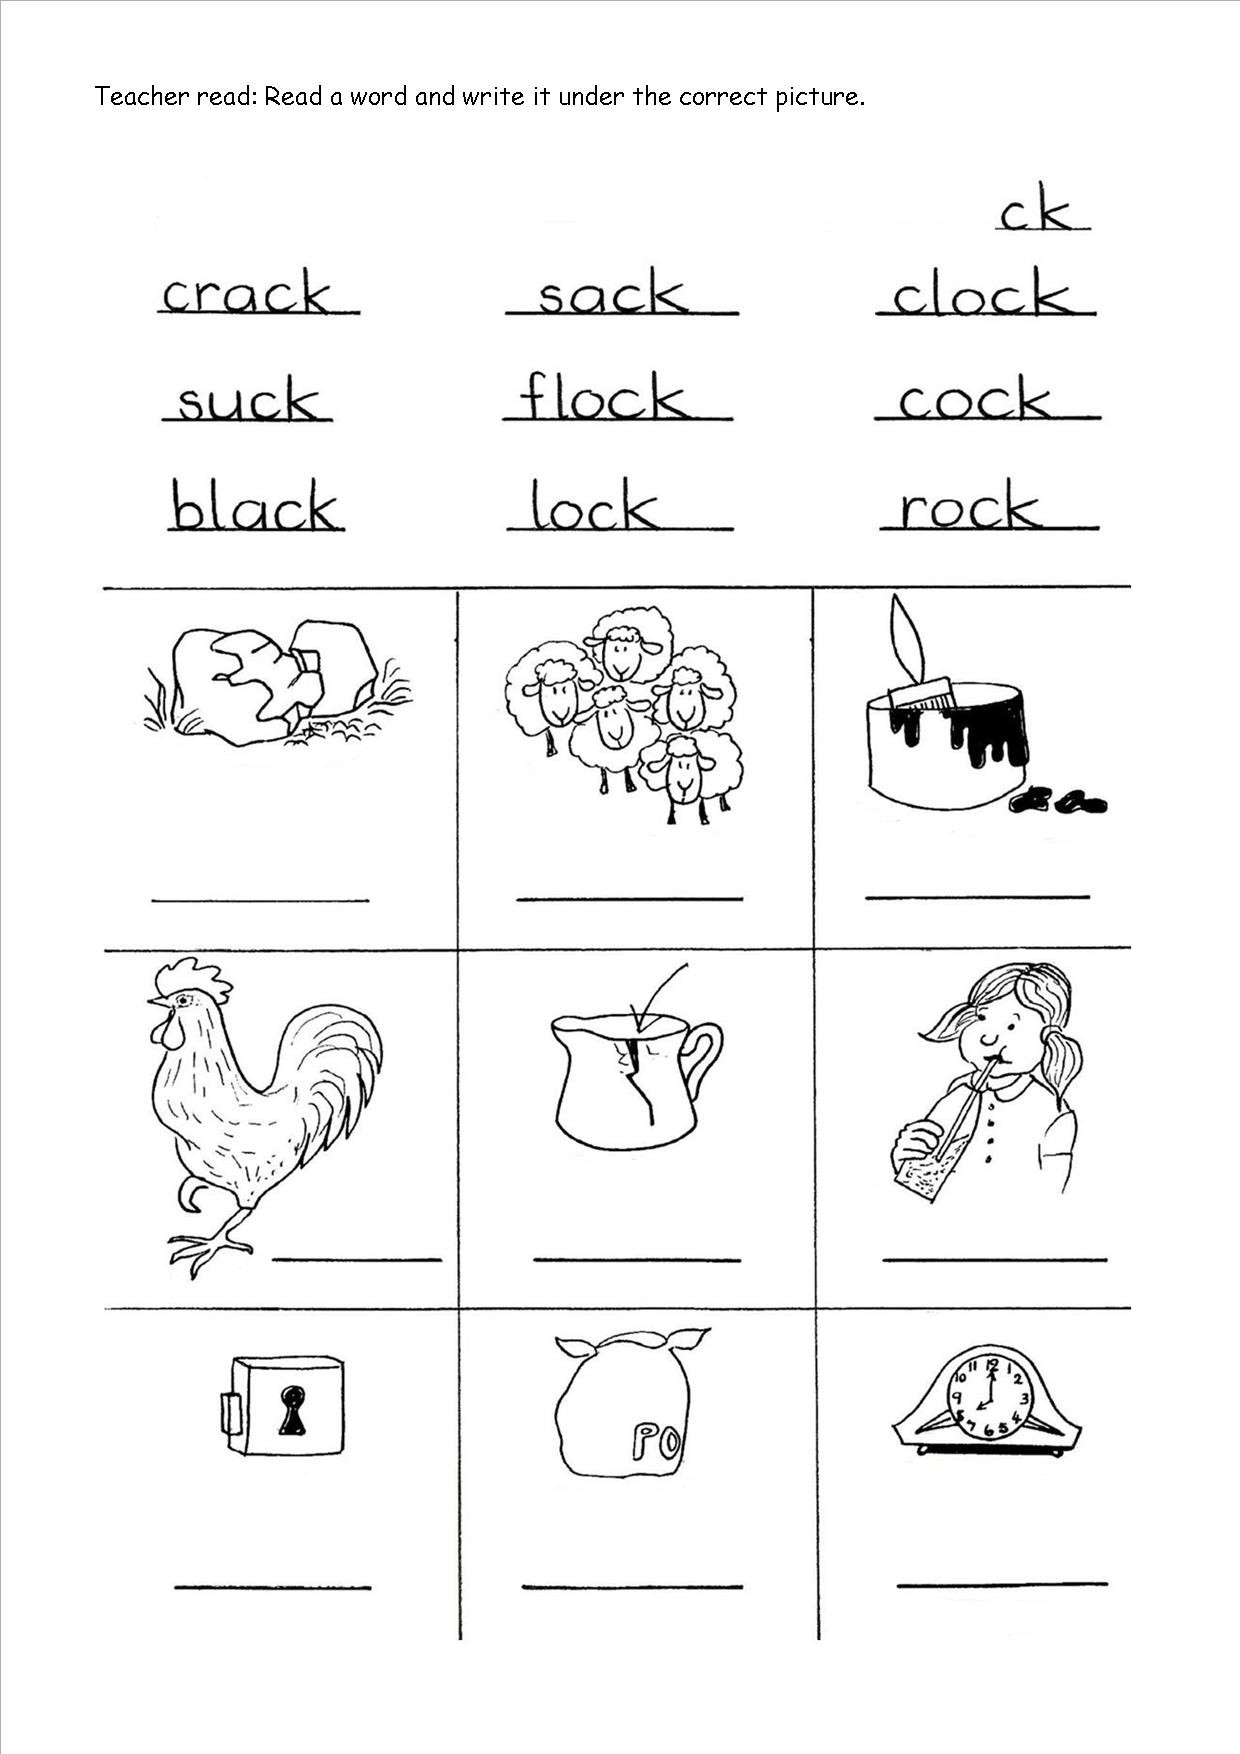 Ck Worksheets for 2nd Grade Ck Worksheets for Kids